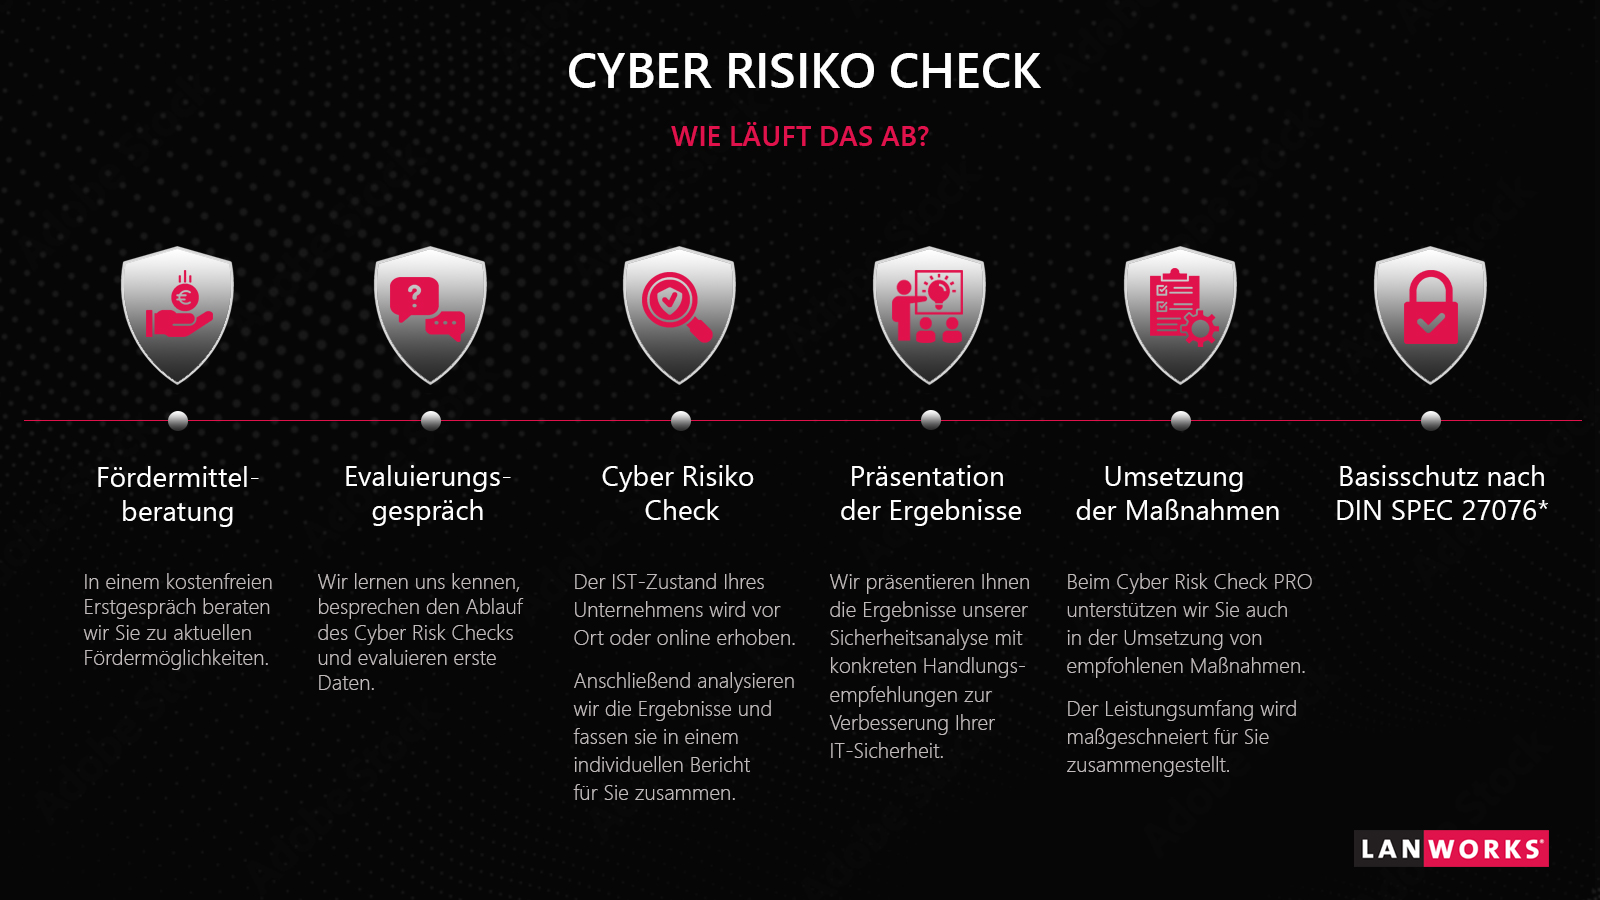 Cyber Security IT-Sicherheit Cyber Sicherheit